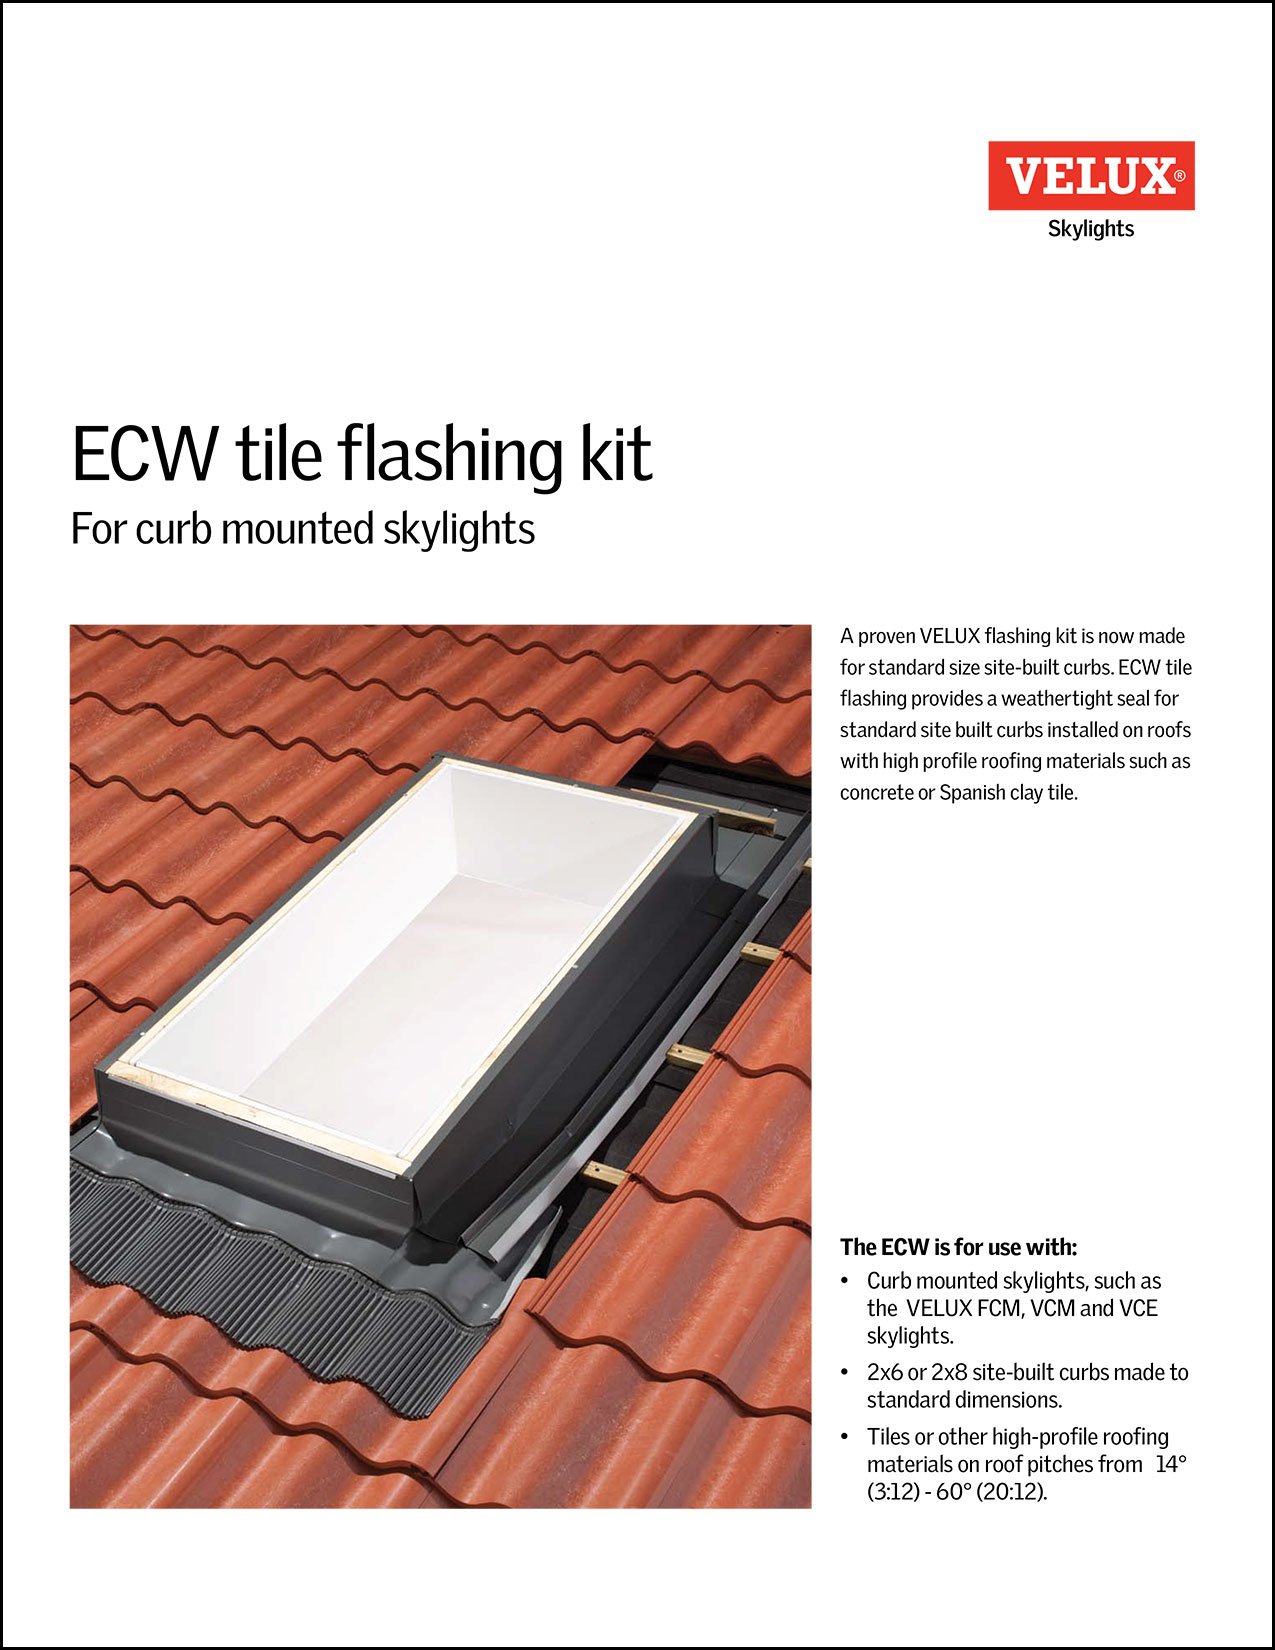 ECW Tile flashing kit brochure